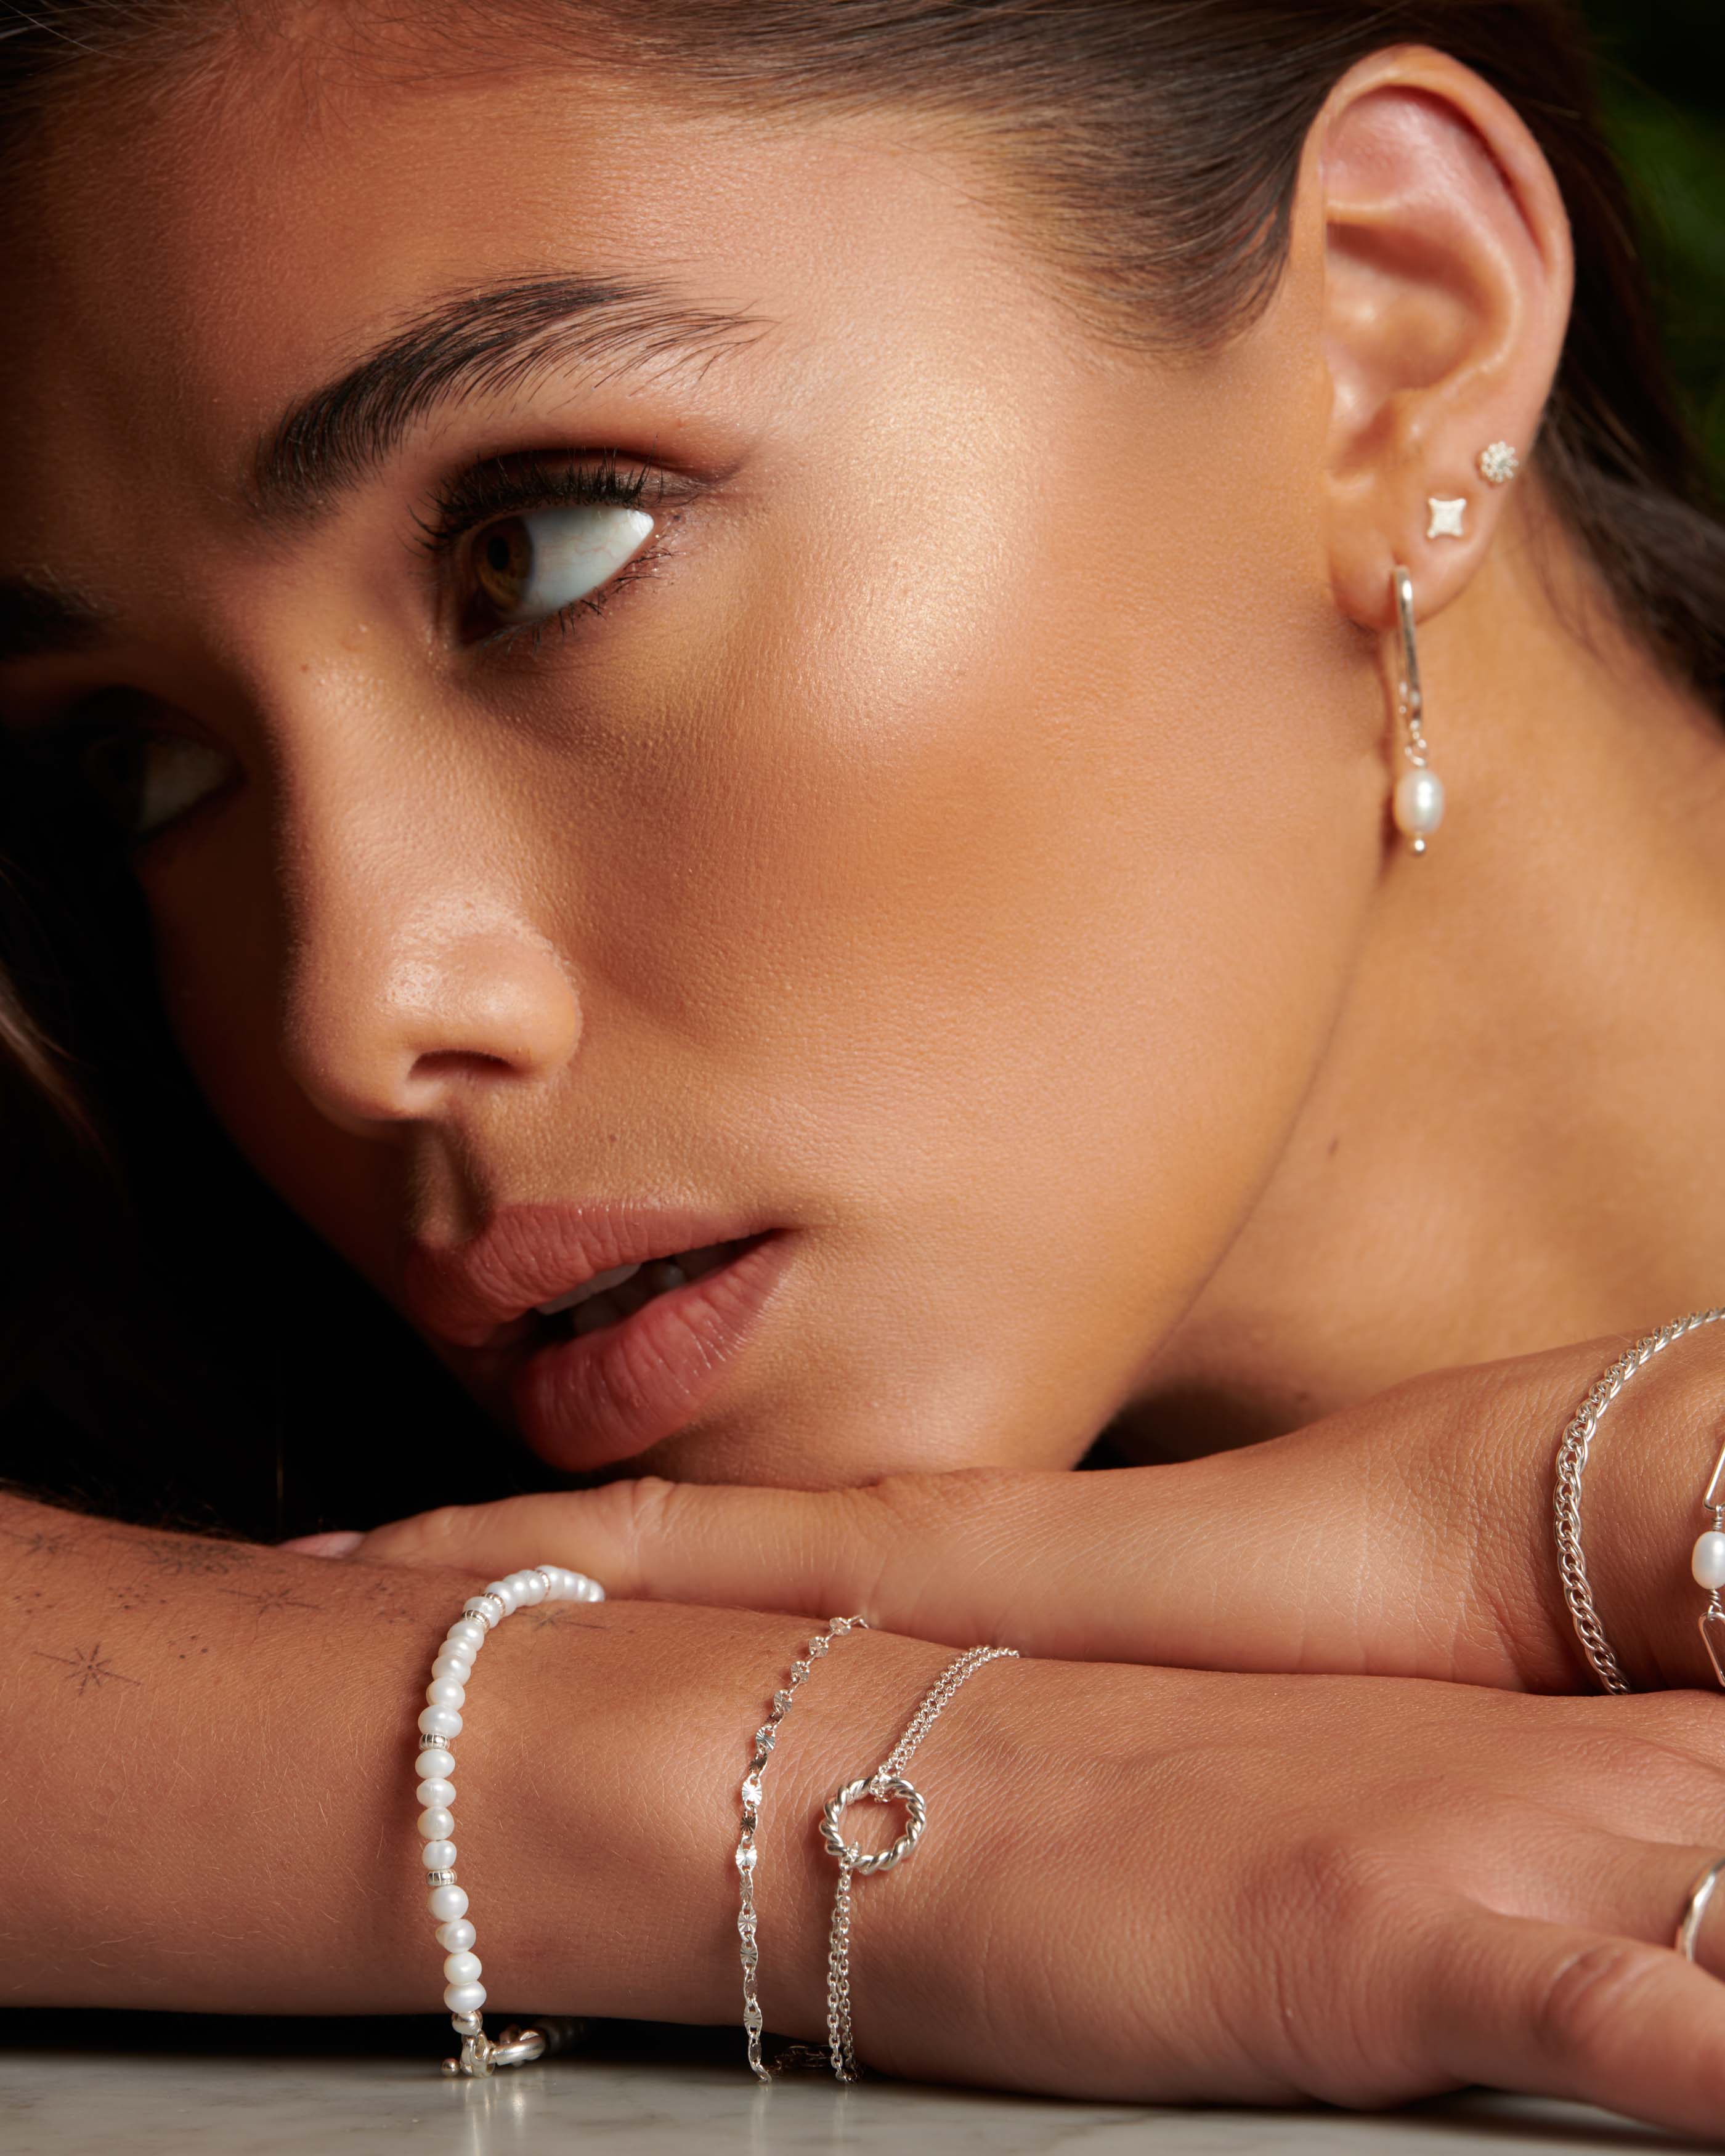 Association de 3 bracelets fabriqués en France, composée d'un bracelet en perles de culture avec des petites perles argentées, d'un bracelet en chaîne marine, et d'un bracelet composé d'une double chaîne forçat avec un anneau torsadé en argent massif 925.